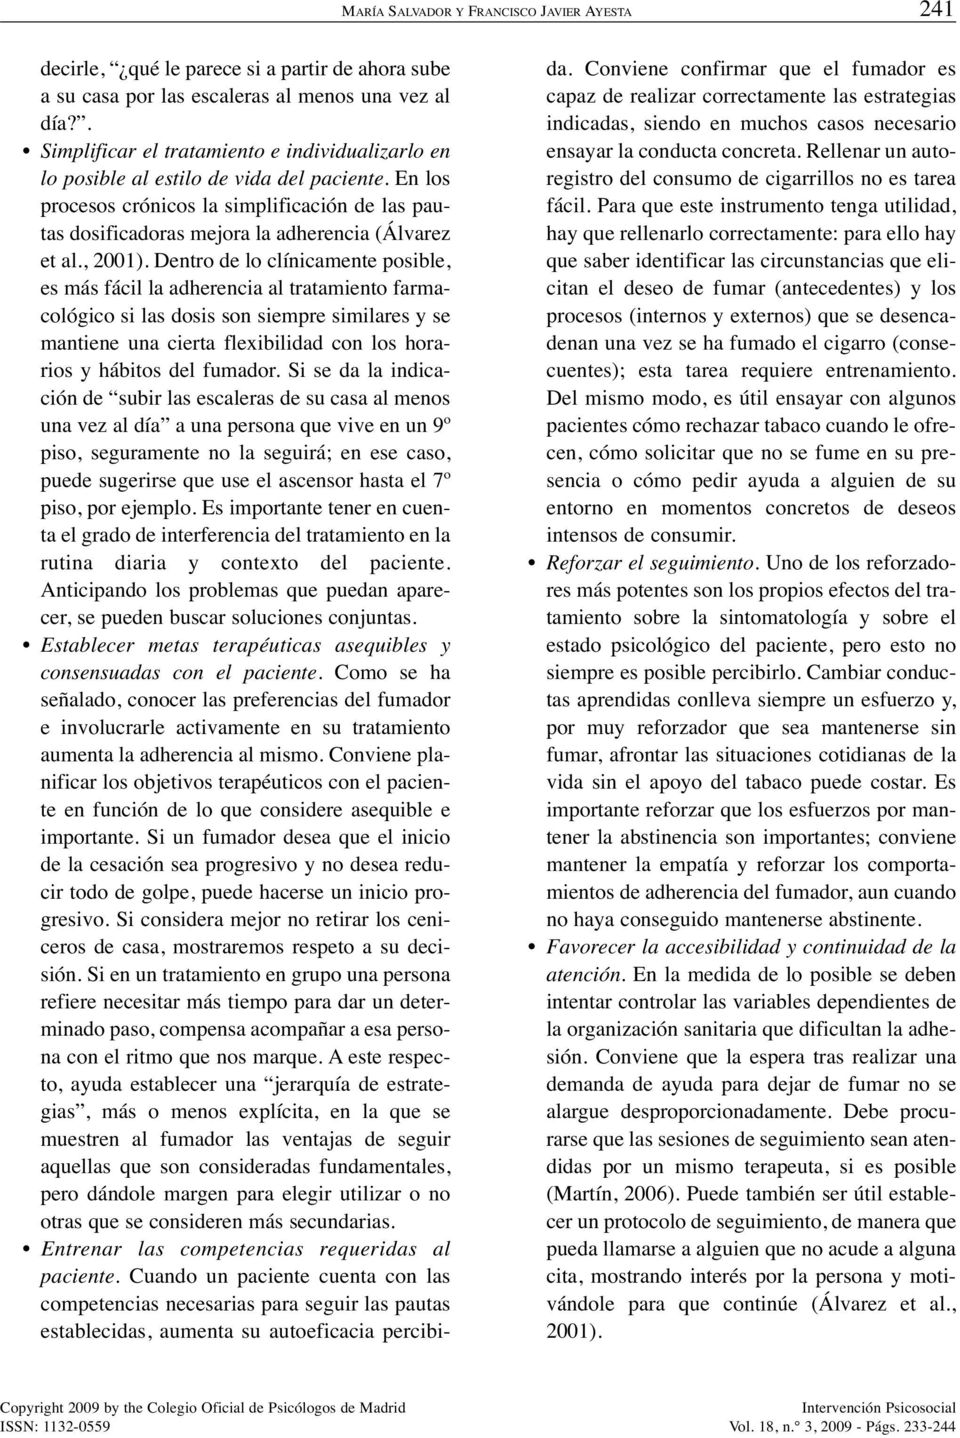 En los procesos crónicos la simplificación de las pautas dosificadoras mejora la adherencia (Álvarez et al., 2001).